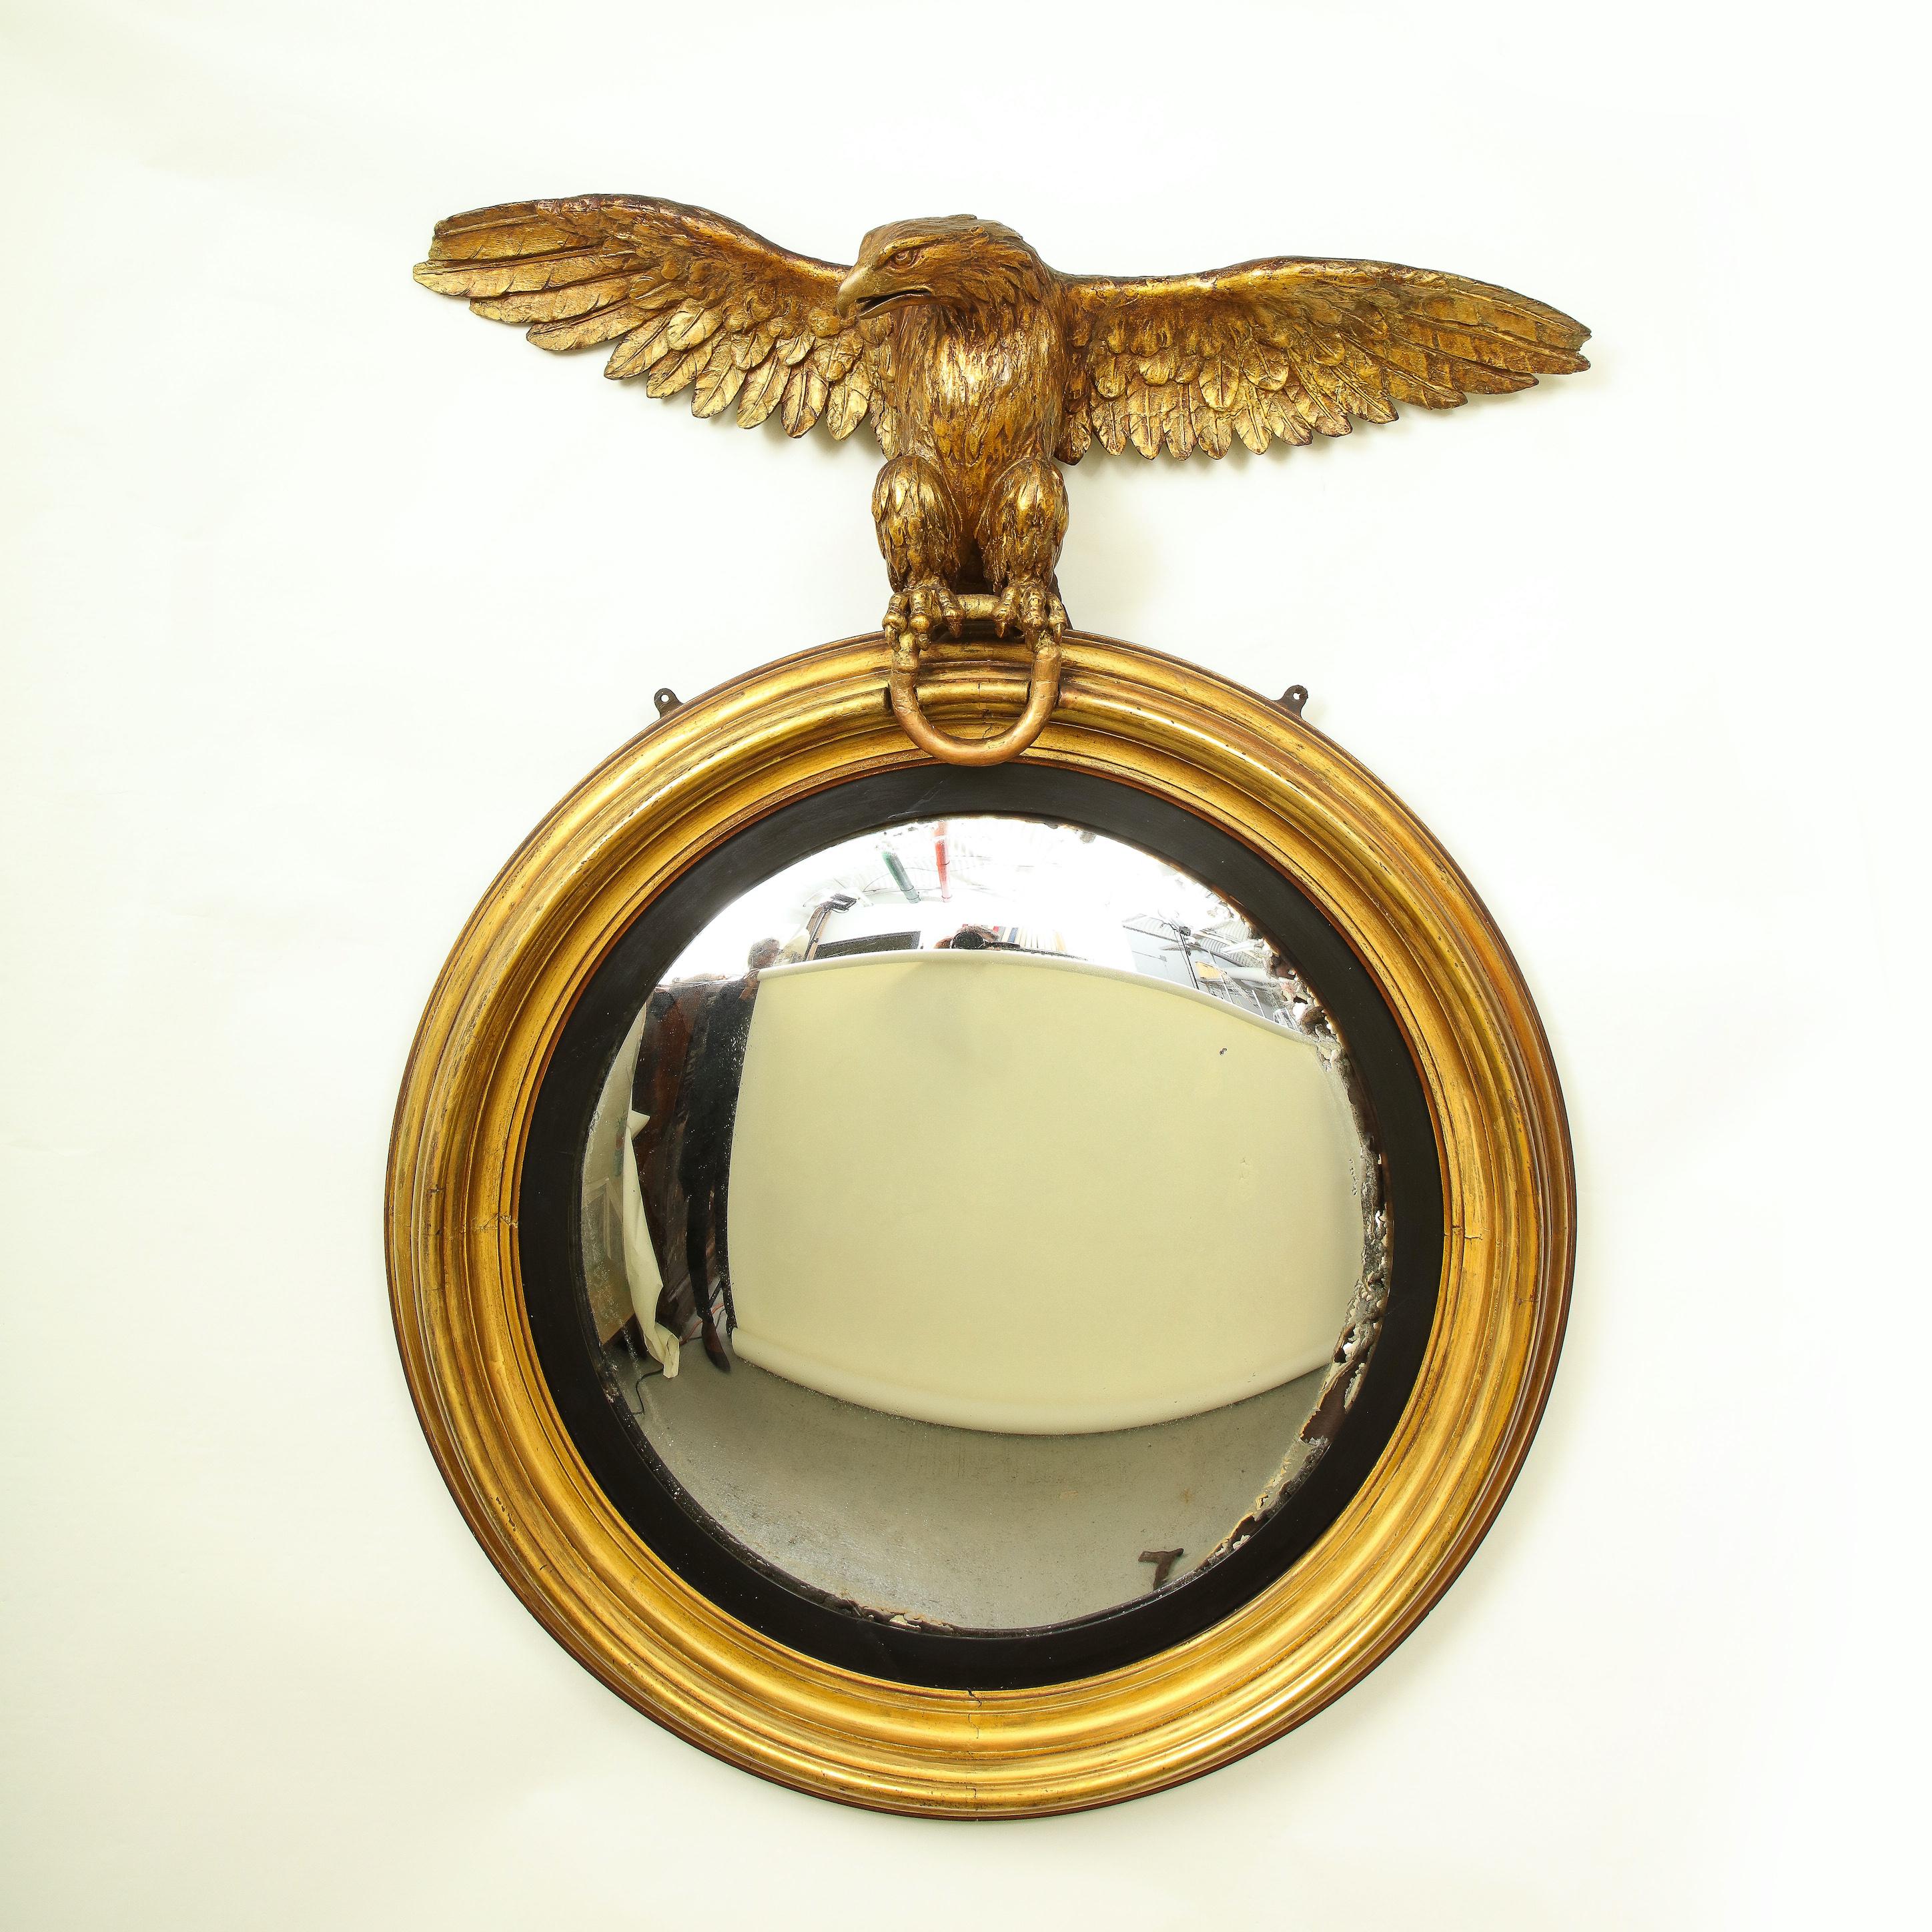 Die kreisförmige konvexe Spiegelplatte in einem schwarzen Schlupf und geformt vergoldet umgeben, von einem ausgestreckten Adler auf Ring thront überragt.

Provenienz: Aus der Sammlung von Mario Buatta, New York, NY.